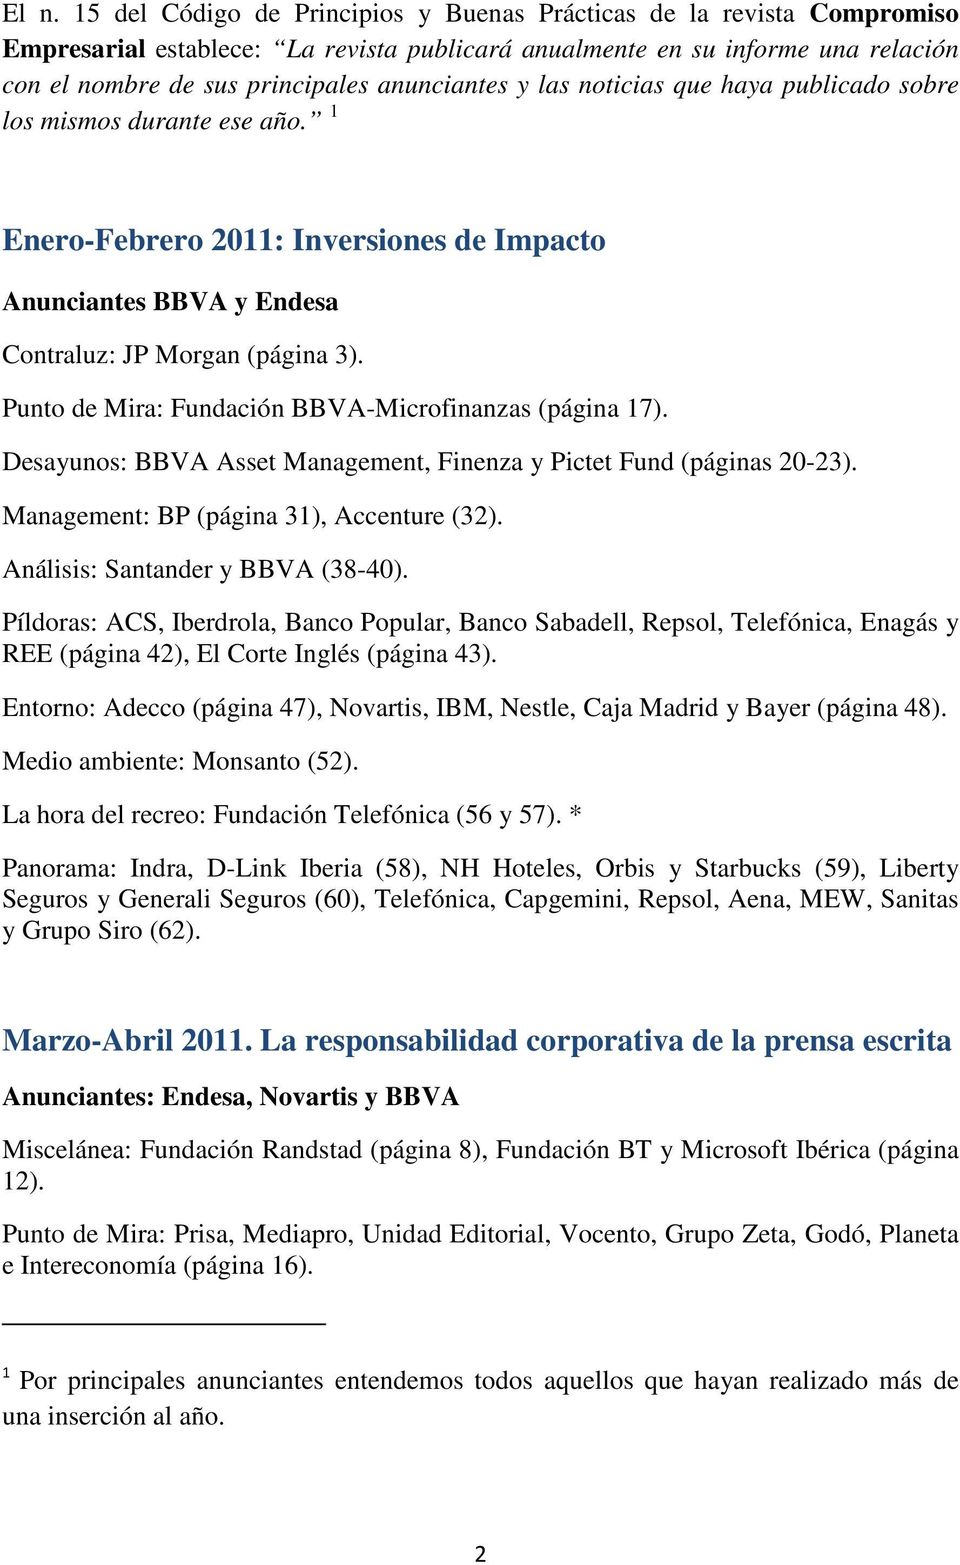 Punto de Mira: Fundación BBVA-Microfinanzas (página 17). Desayunos: BBVA Asset Management, Finenza y Pictet Fund (páginas 20-23). Management: BP (página 31), Accenture (32).